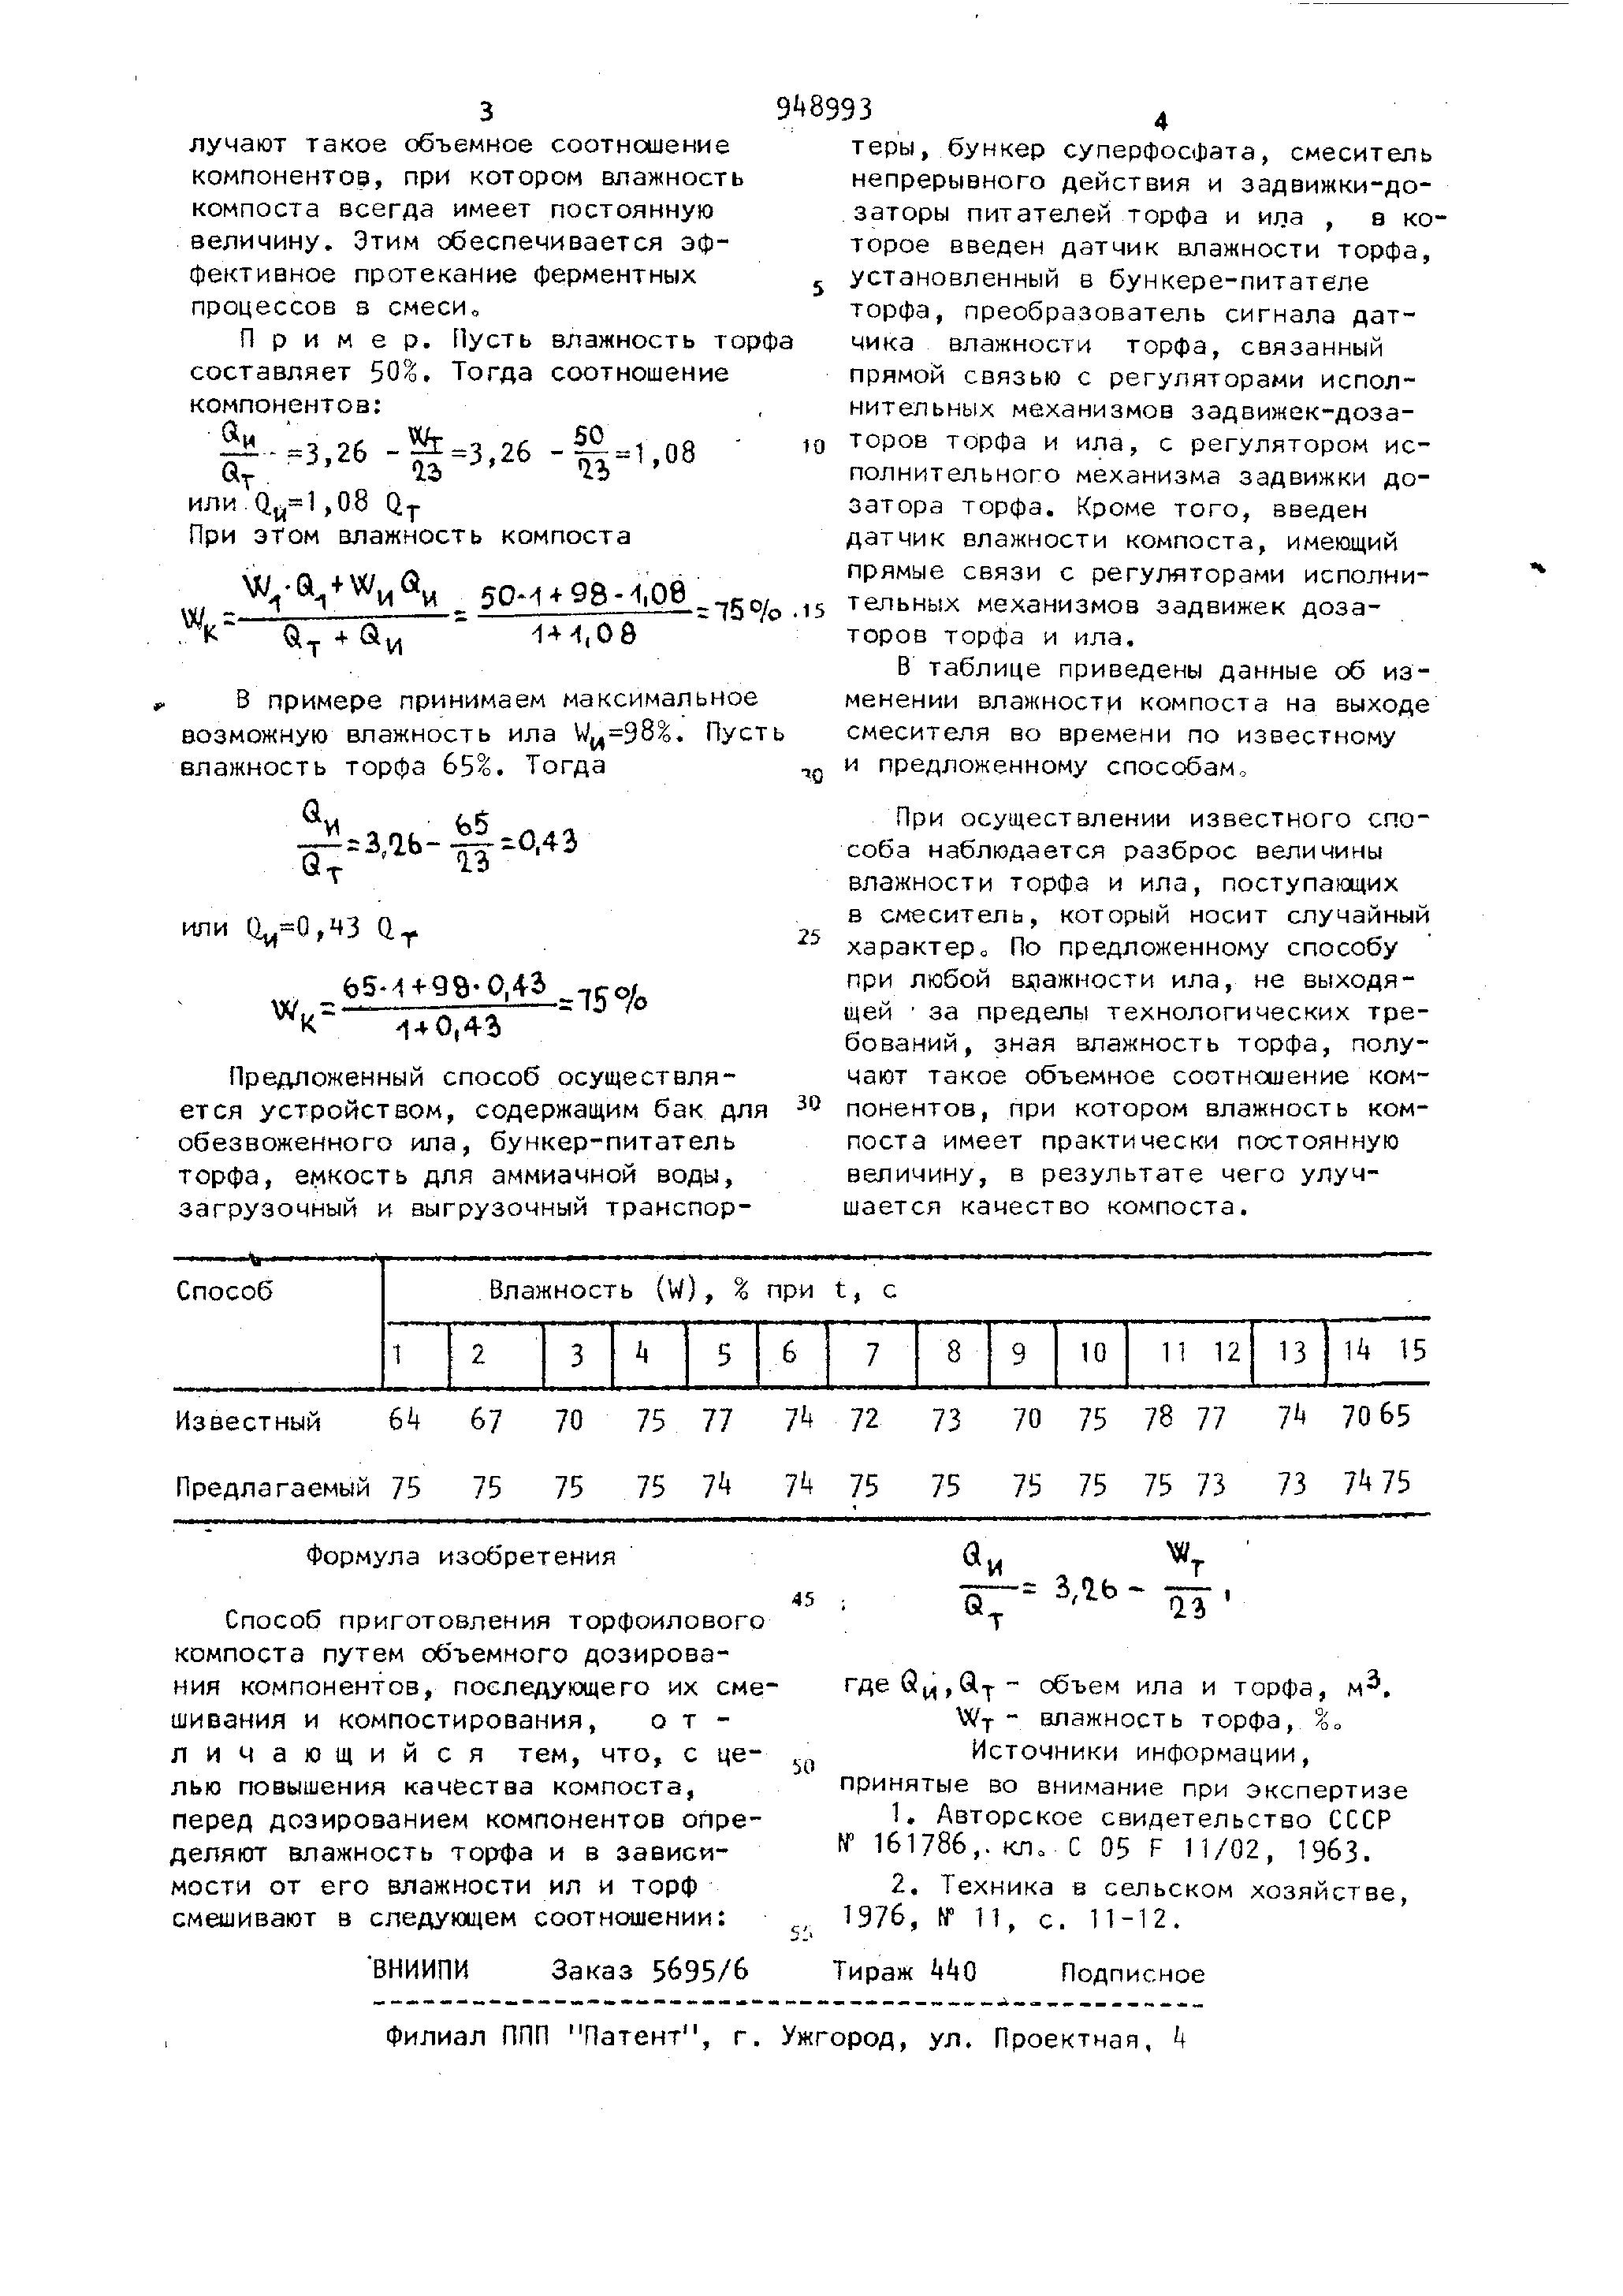 SU948993A1 - Способ приготовления торфоилового компоста - Яндекс.Патенты